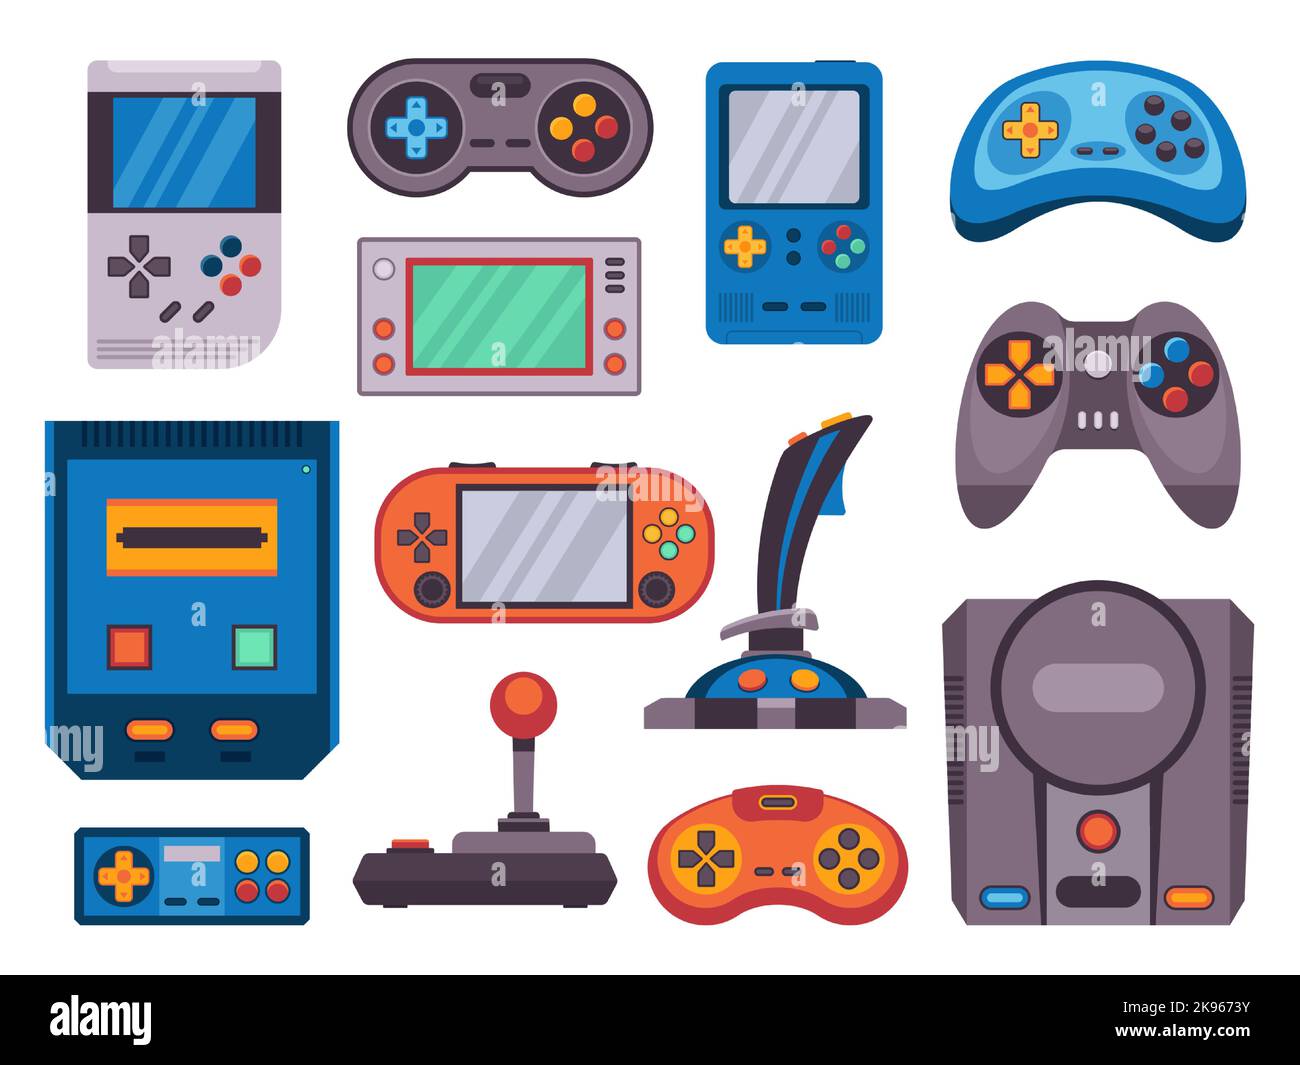 Retro-Spielekonsole. Cartoon Videospiel Joystick Symbole, moderne tragbare drahtlose Videokonsole analoge Gamepad Gadgets für Geek-Spieler. Vektorset Stock Vektor